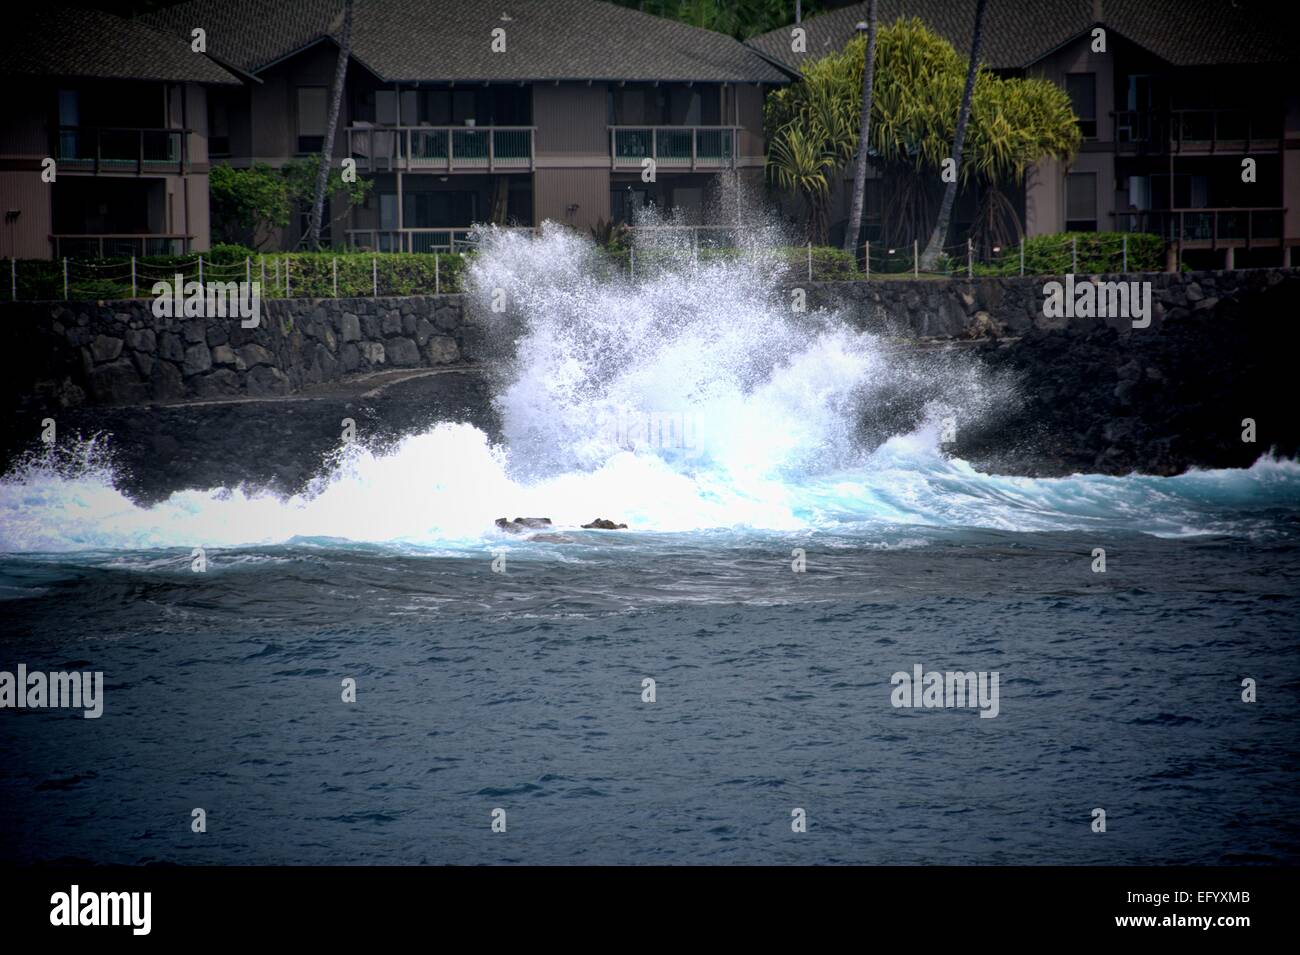 Wave breaking on rocks in Hilo Hawaii Stock Photo